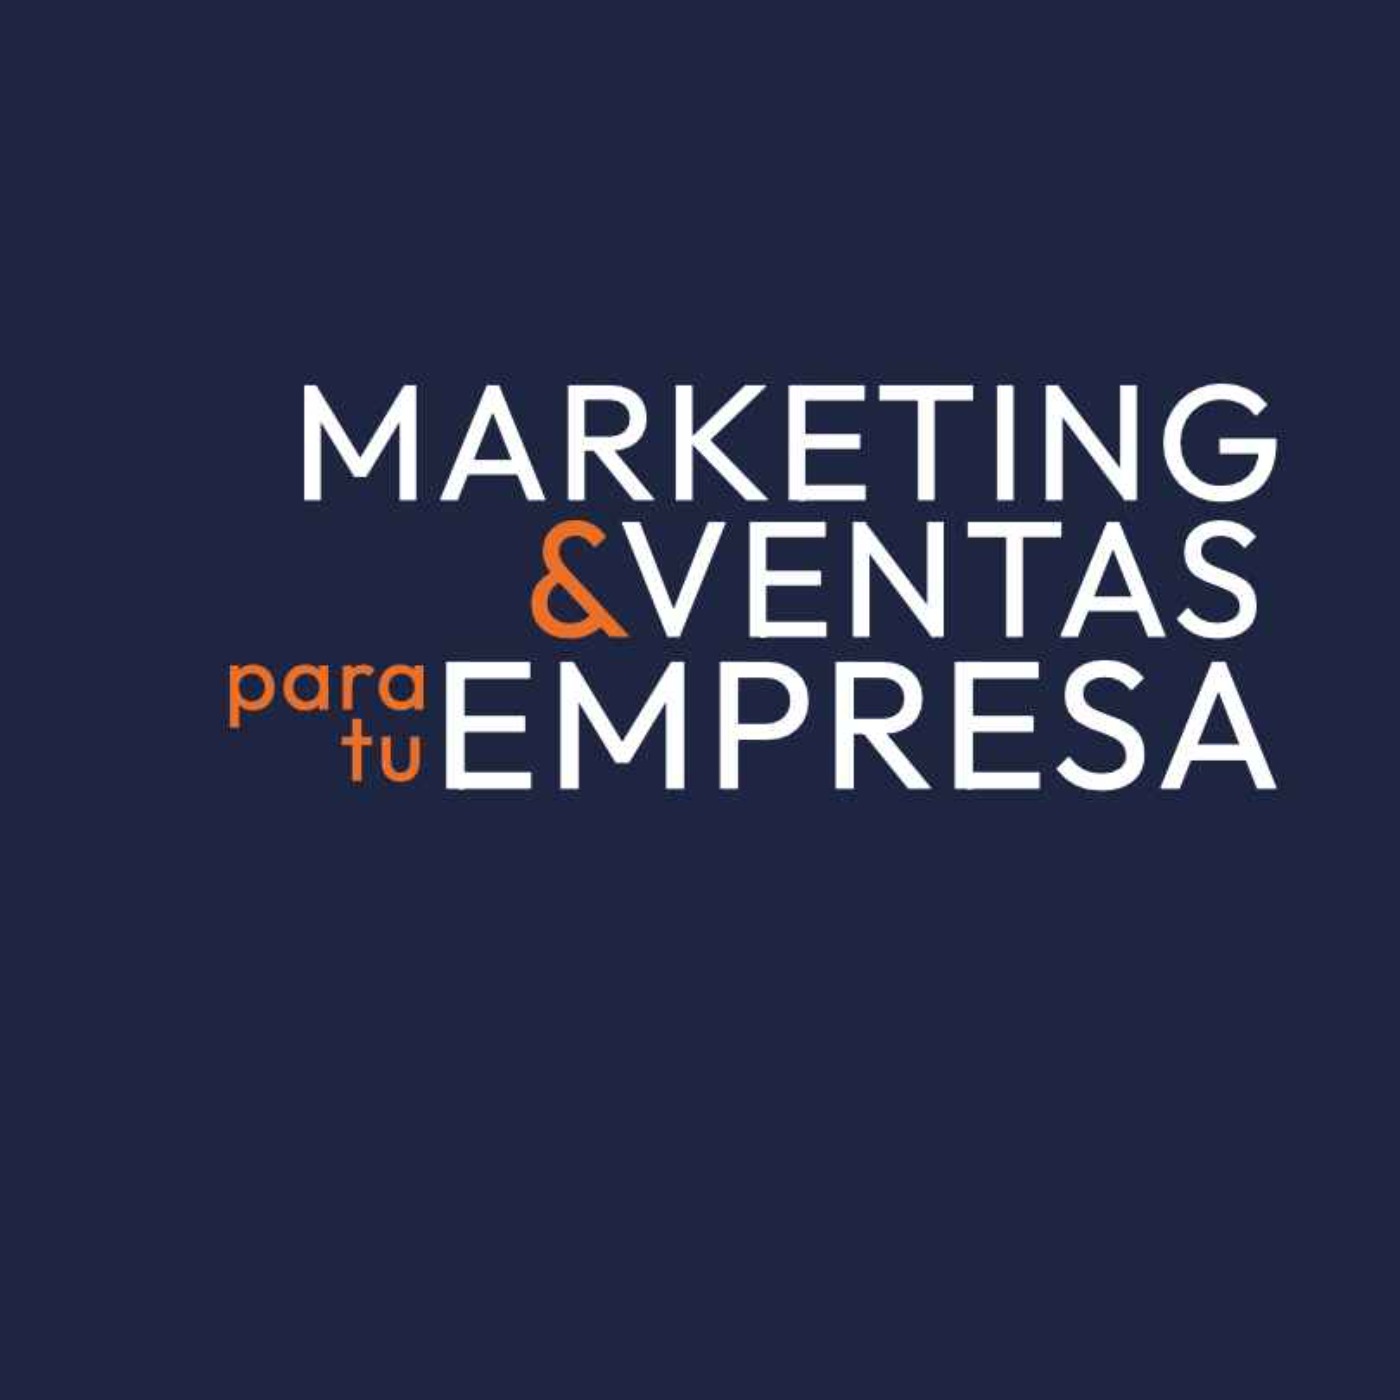 00 - Marketing & Ventas para tu Empresa